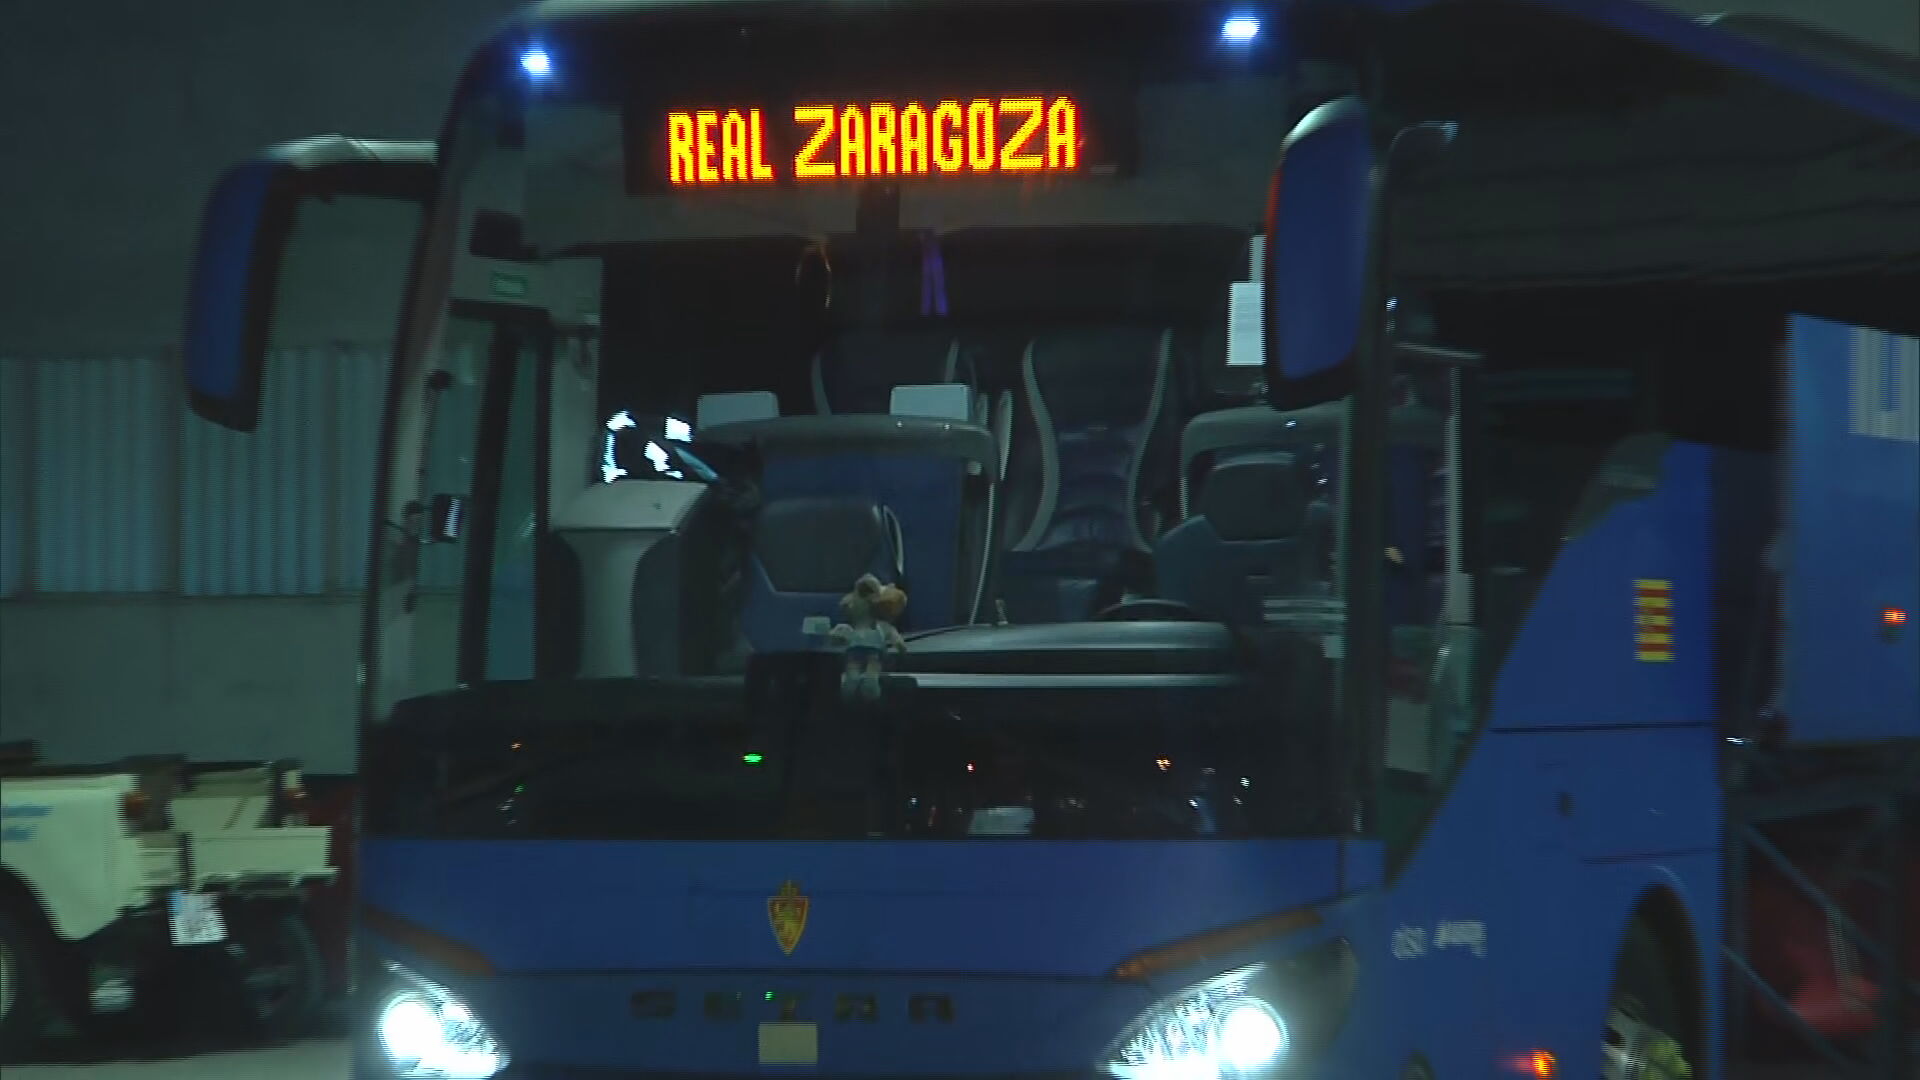 El autobús del Zaragoza llega al estadio completamente vacío para recoger el material del equipo